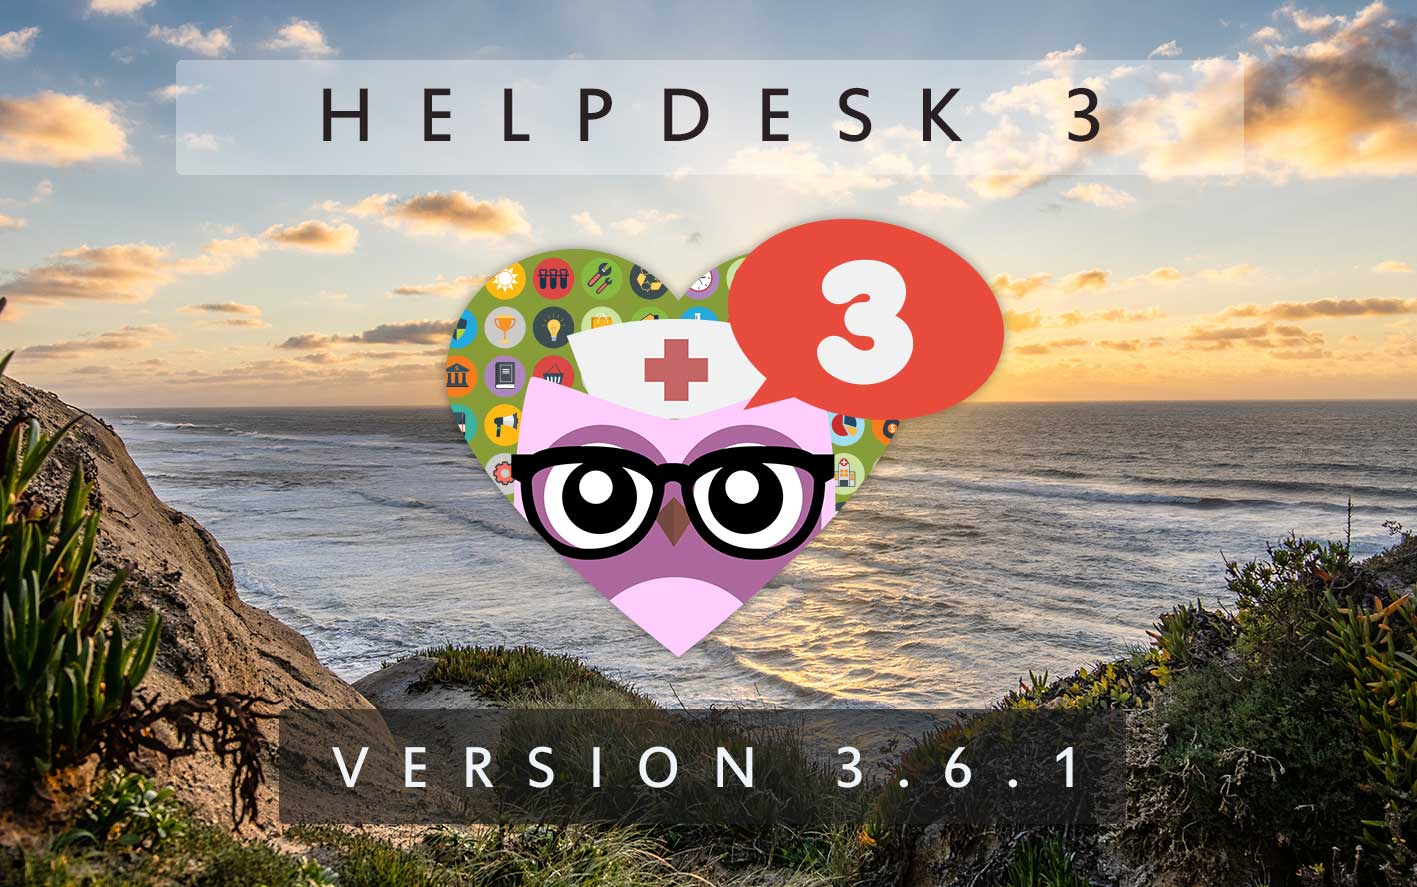 HelpDesk 3 - Version 3.6.1